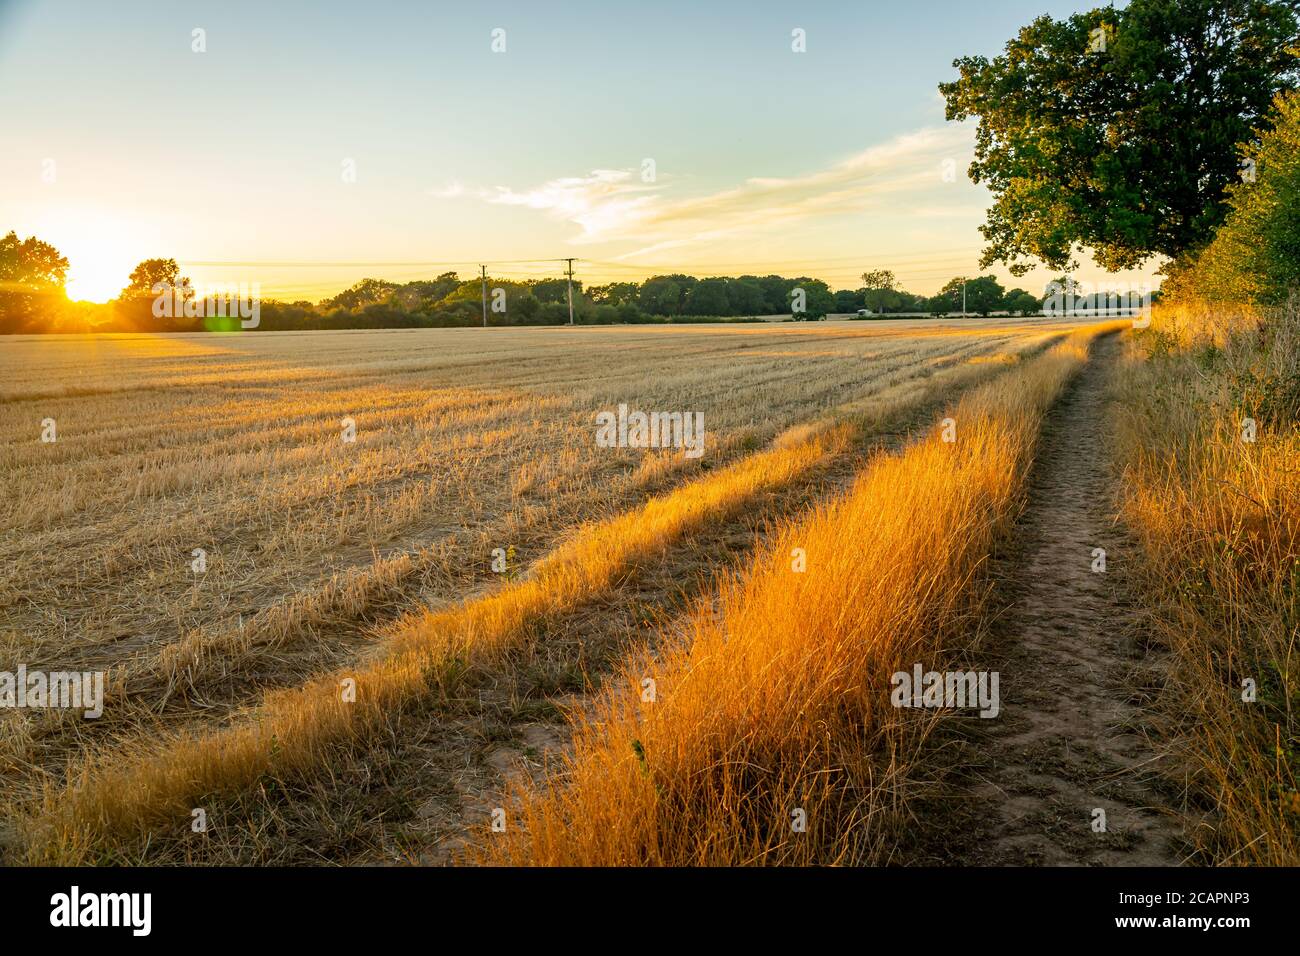 Margen de campo de un campo de trigo cosechado al atardecer Foto de stock